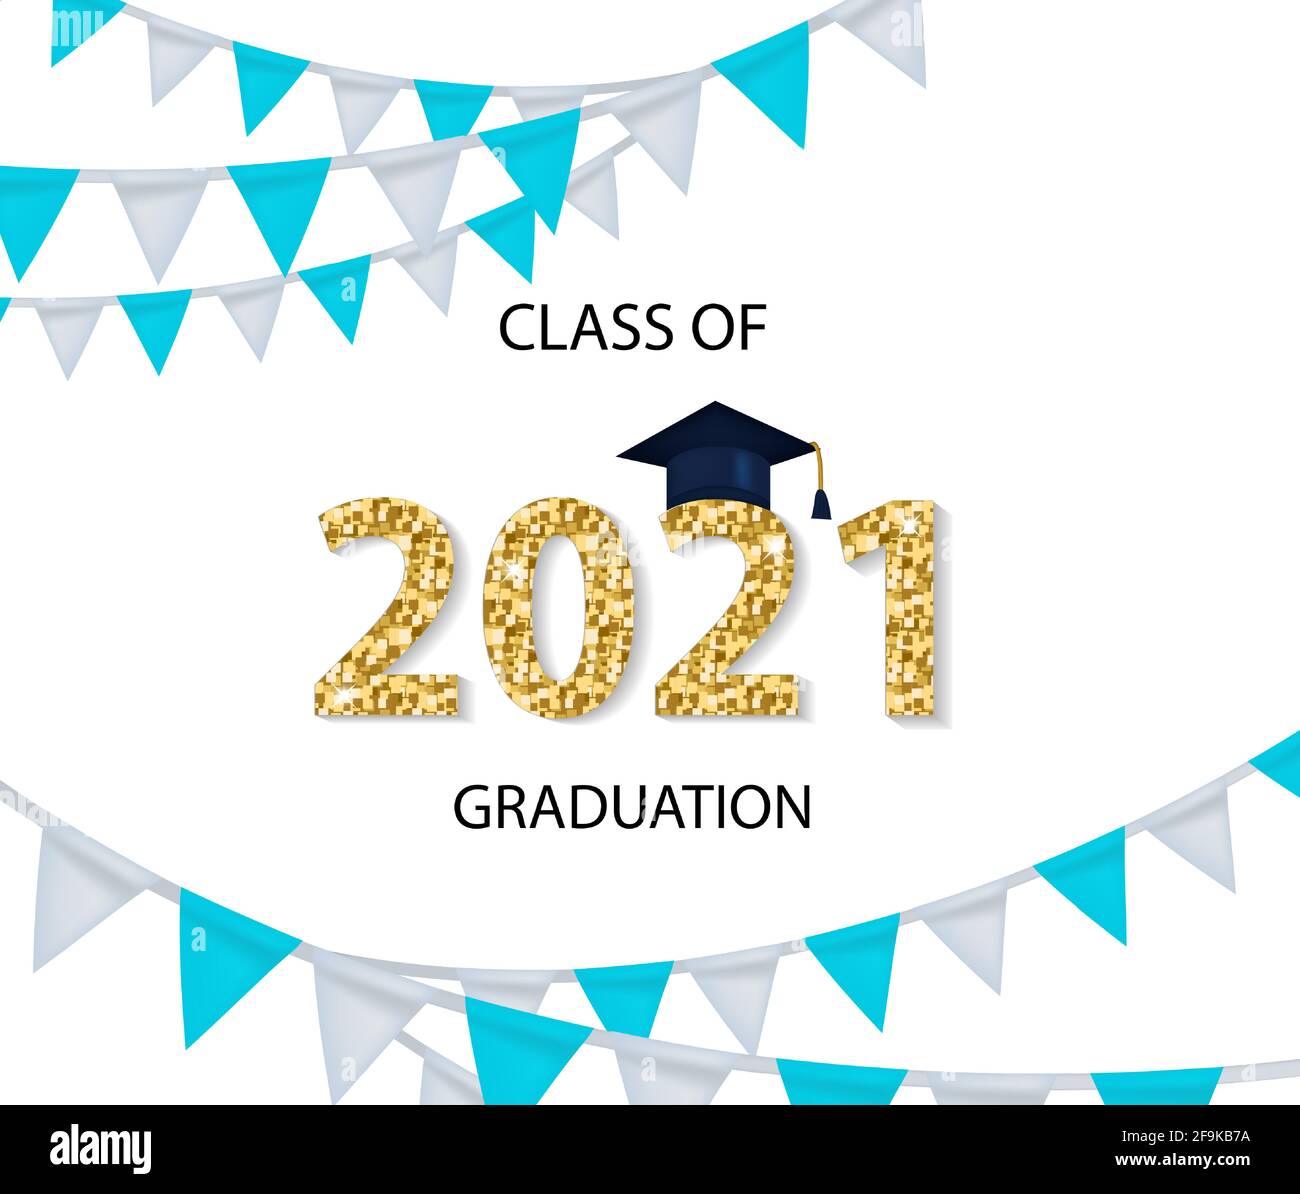 Class of 2021 Graduation Gratulation Vorlage für Ihr Design mit Graduation Hut und glänzenden Zahlen. Vektorgrafik Stock Vektor